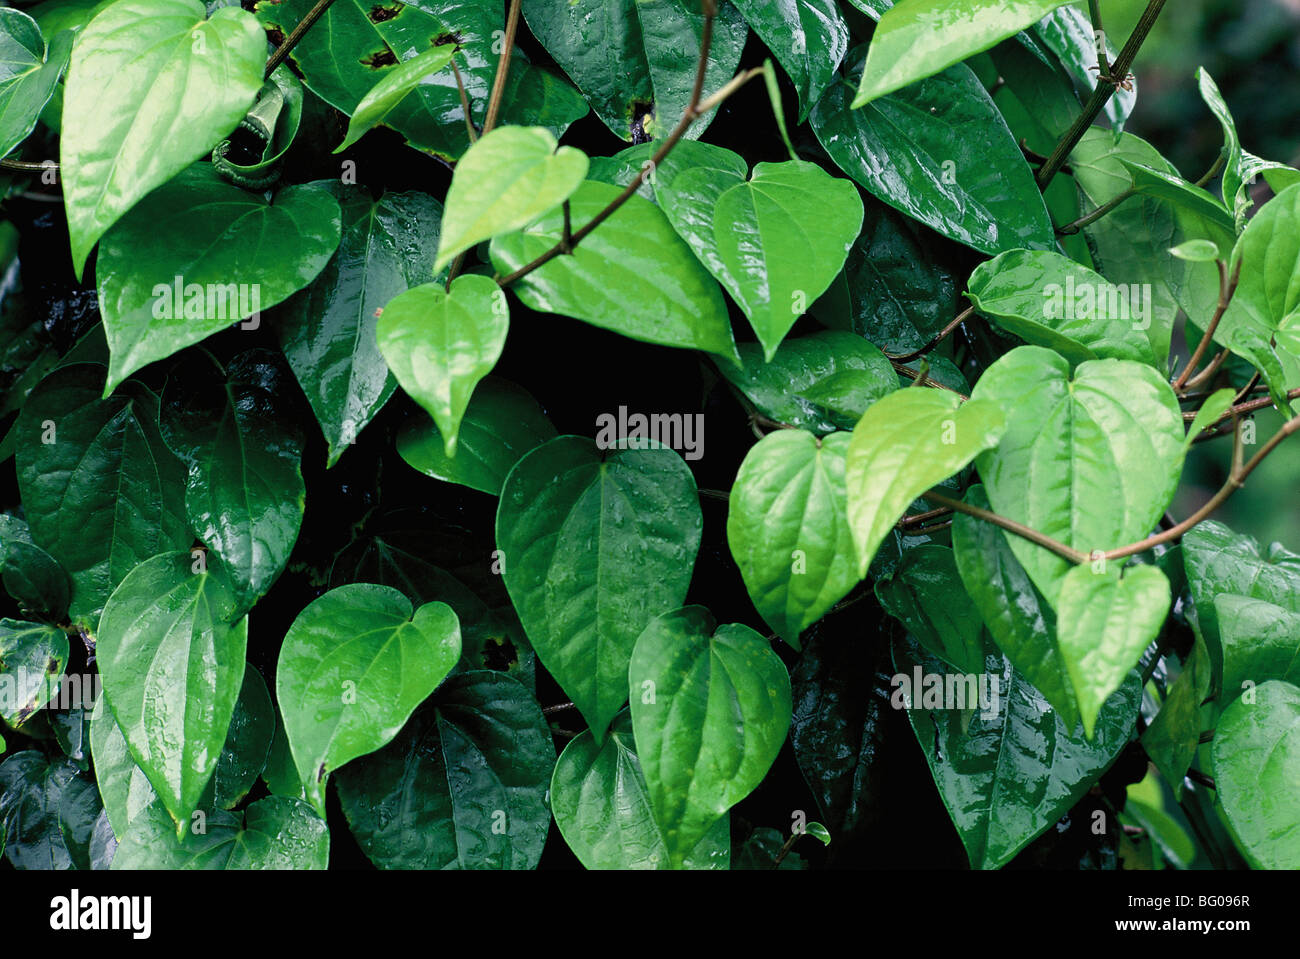 Les feuilles de vigne de bétel (Piper betle), la famille Piperaceae, considérés tant comme un léger stimulant et pour ses propriétés médicinales, l'Inde Banque D'Images